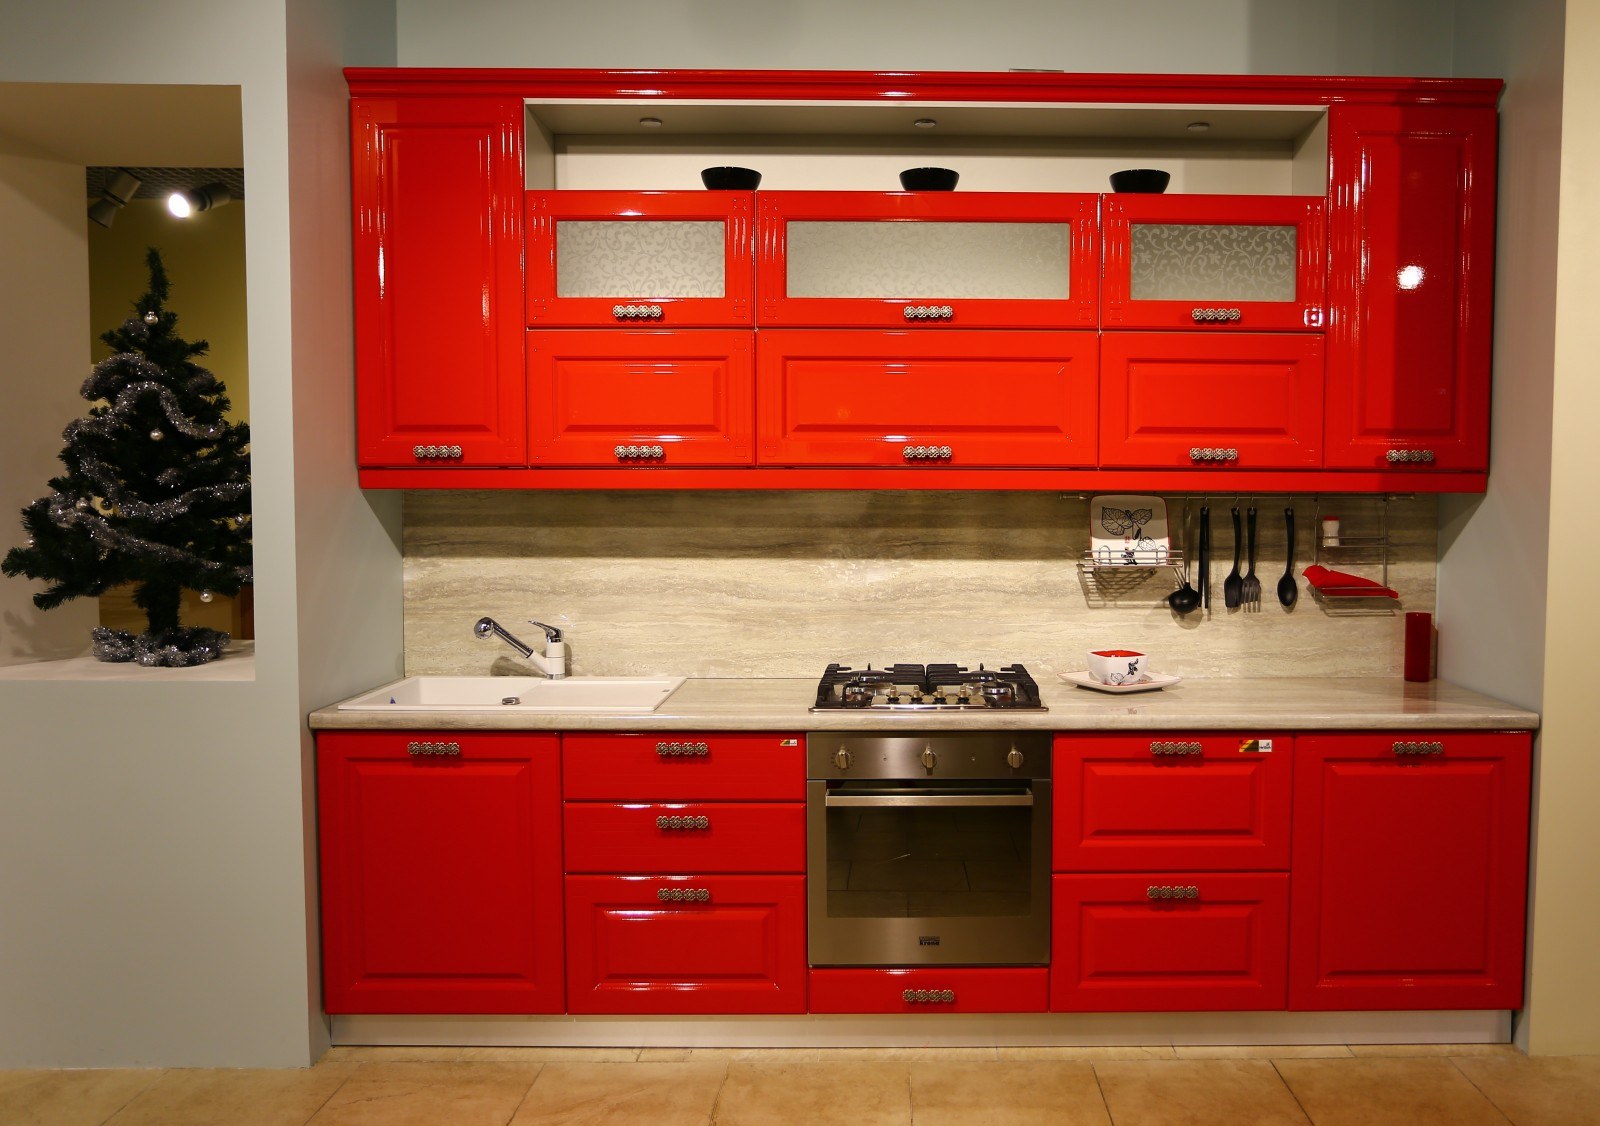 Красная кухня - реальные фото красных кухонь в интерьере с красным холодильником, с красным гарнитуром.Кухня — вкус комфорта